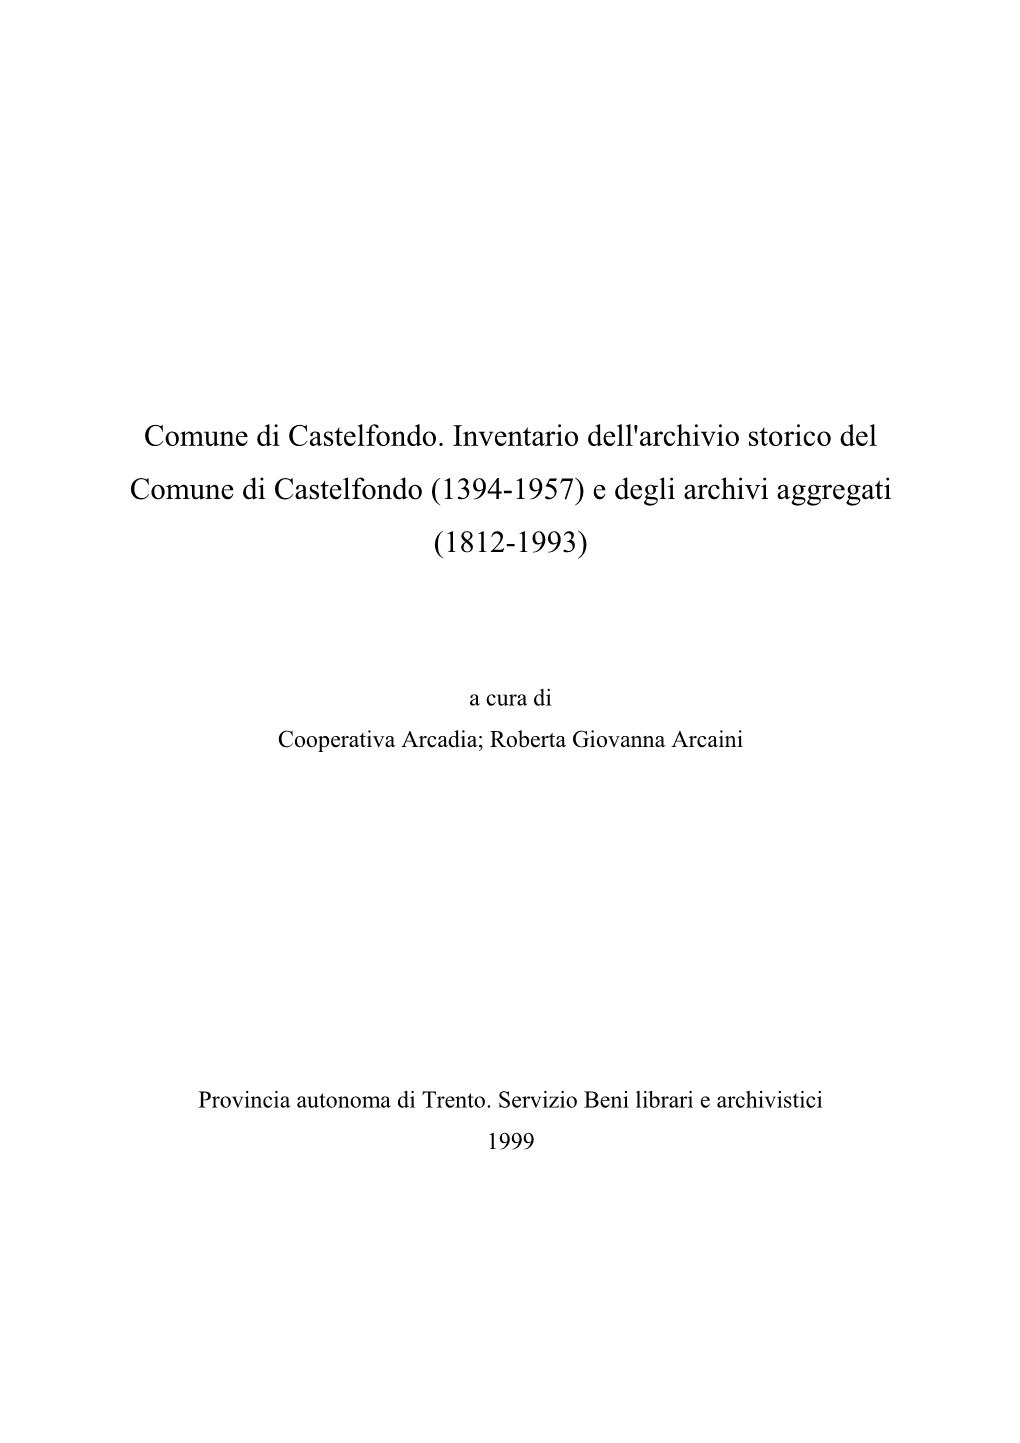 Comune Di Castelfondo. Inventario Dell'archivio Storico Del Comune Di Castelfondo (1394-1957) E Degli Archivi Aggregati (1812-1993)